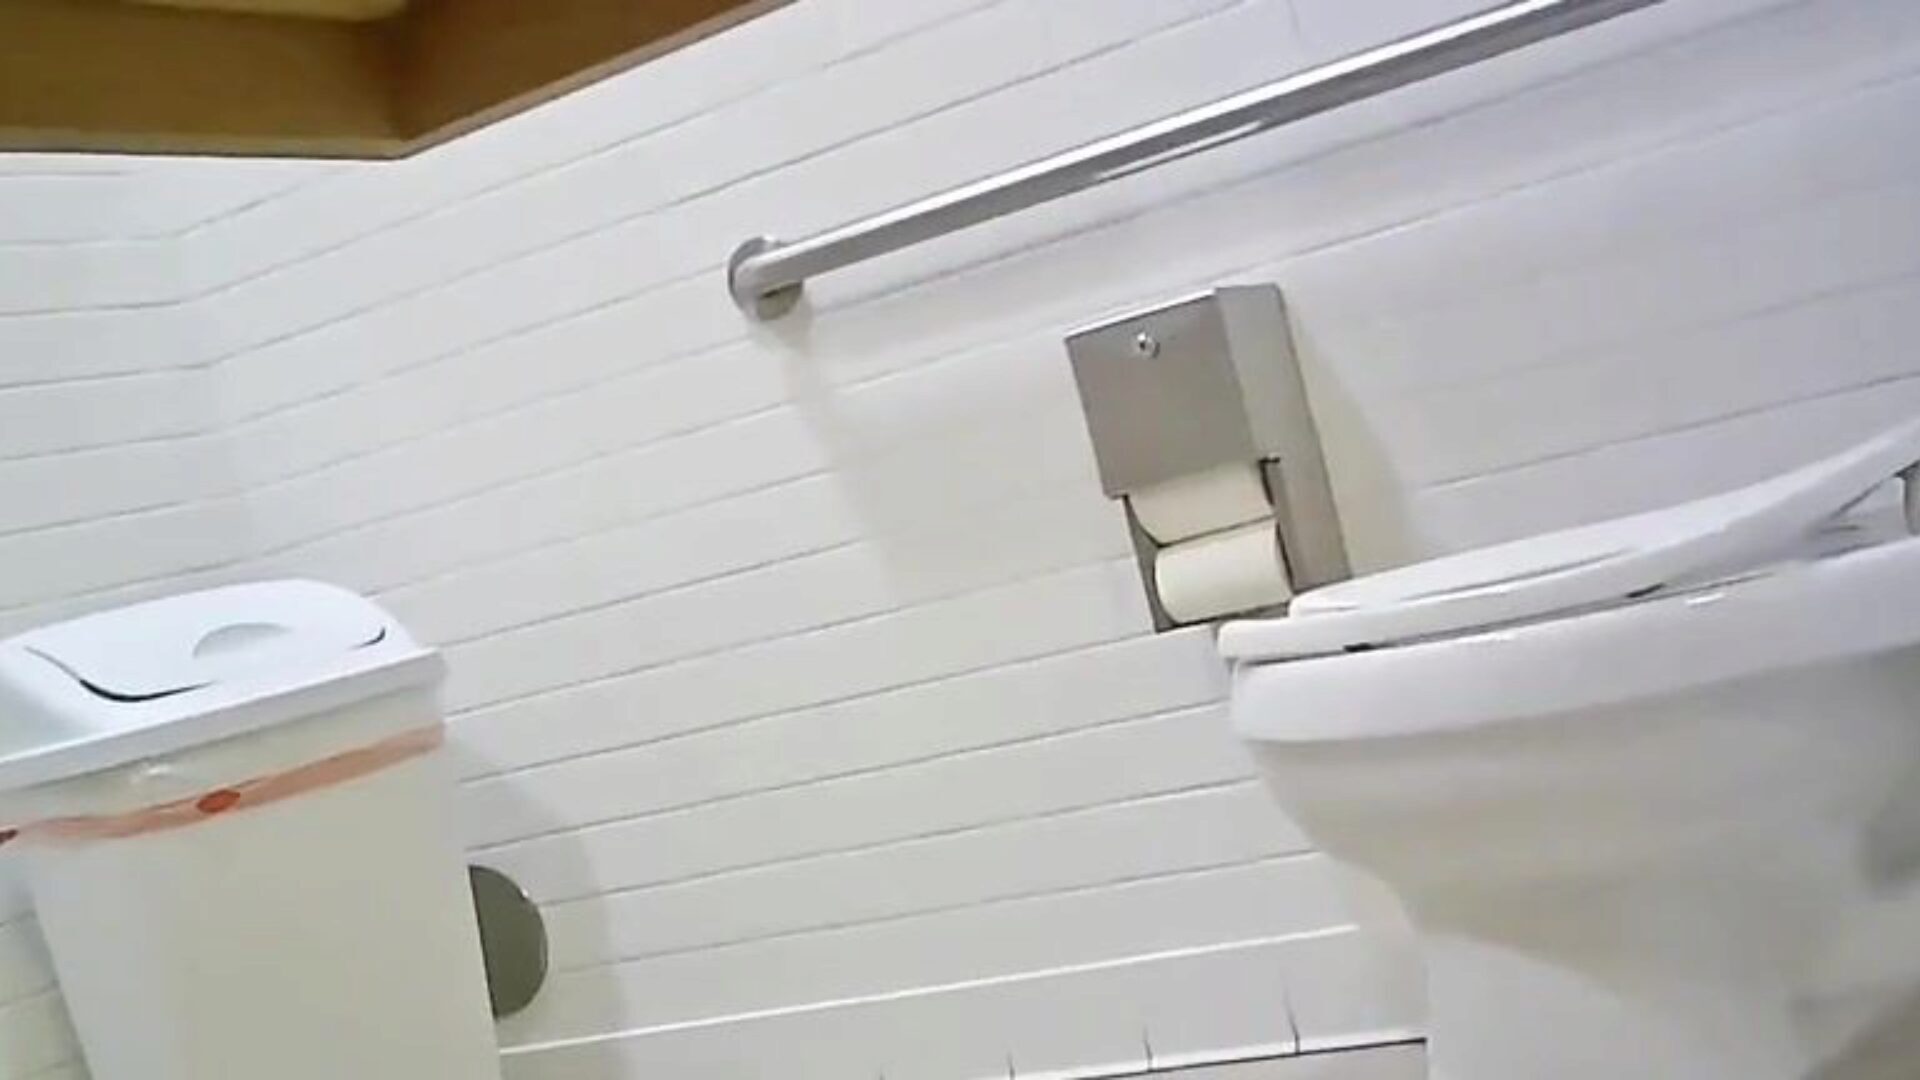 banheiro escondido câmera - fit hotty ideal gazoo confira este, diga-me o que você acha; p ’